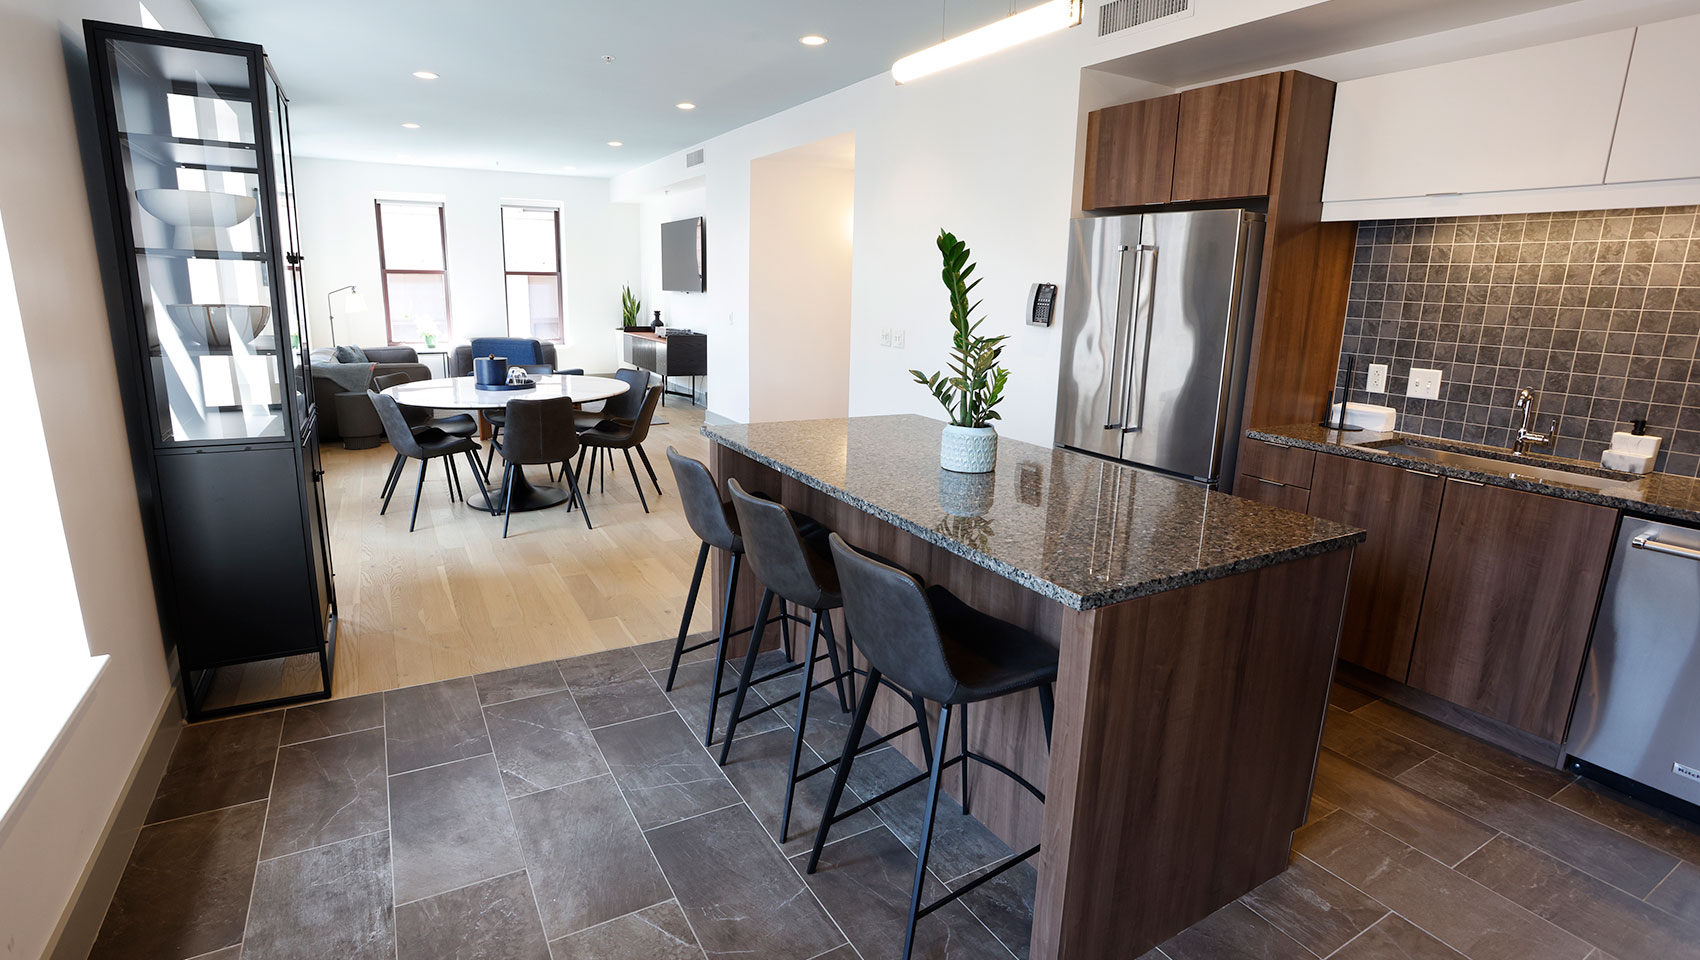 Rockefeller Suite Kitchen + View of Living Room